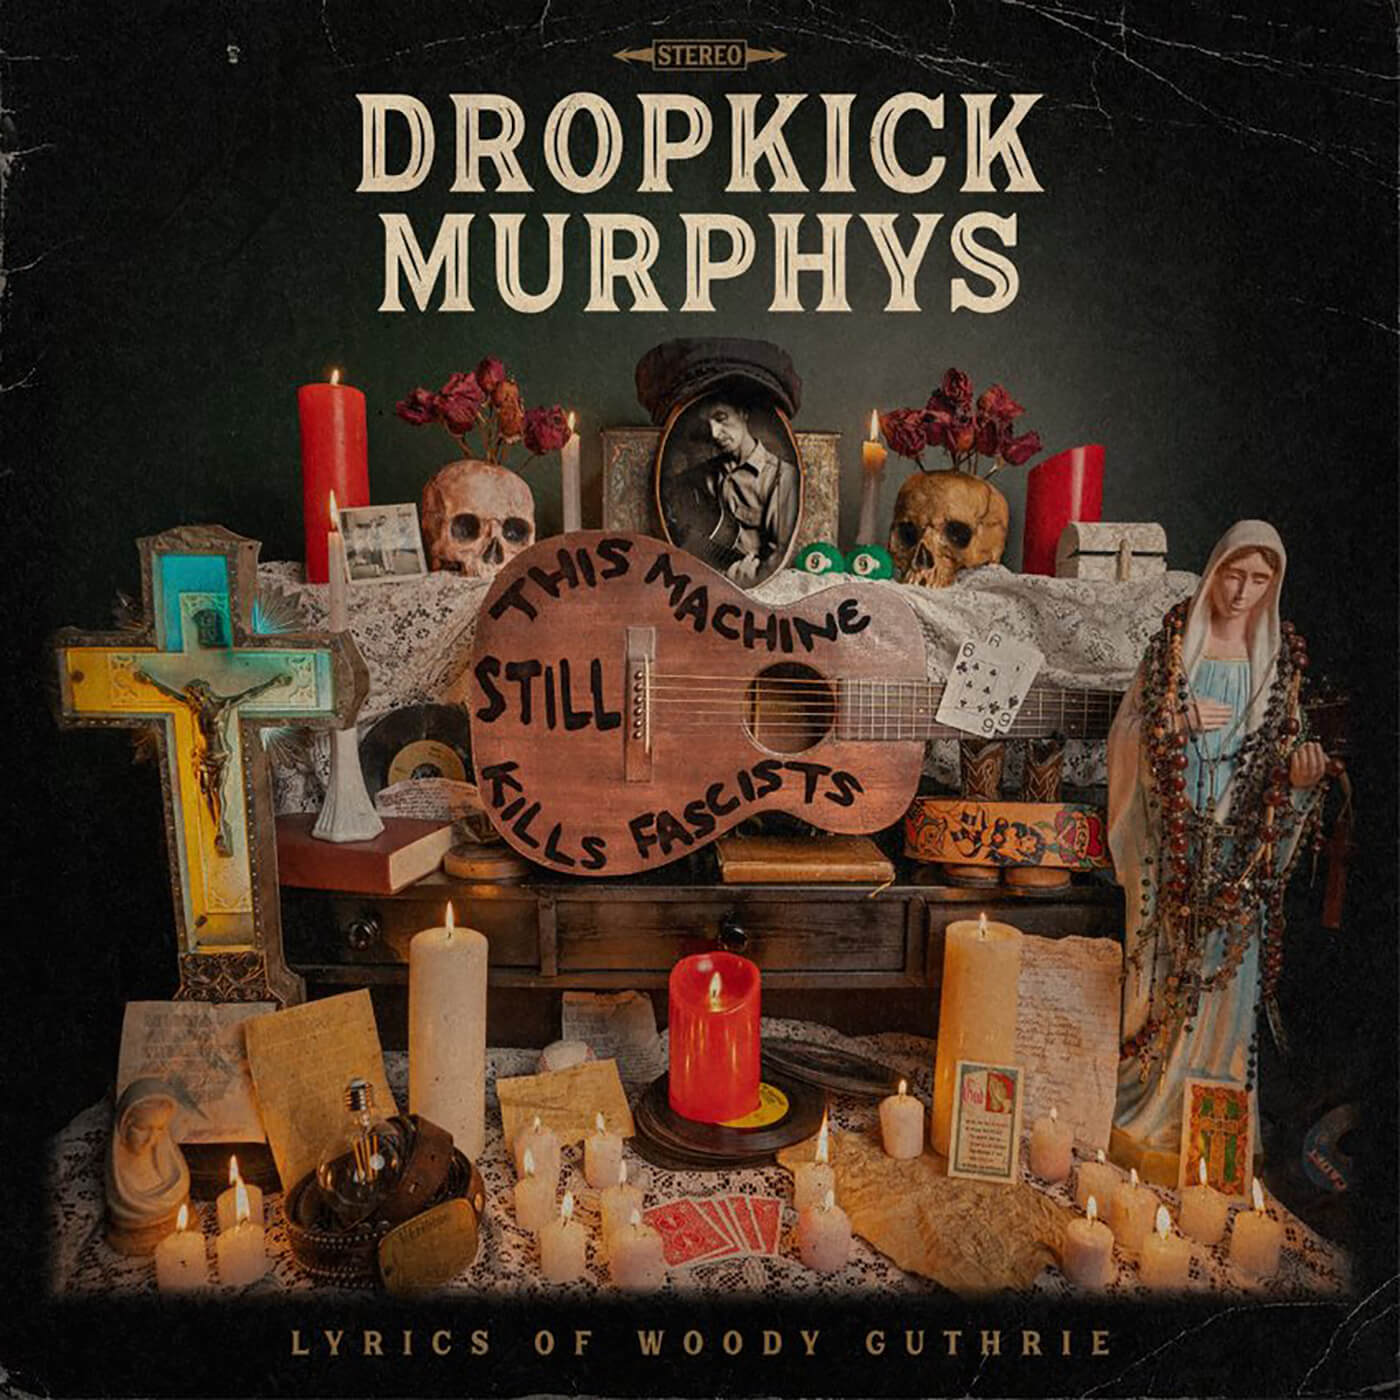 Dropkick Murphys - This Machine Still Kills Facists